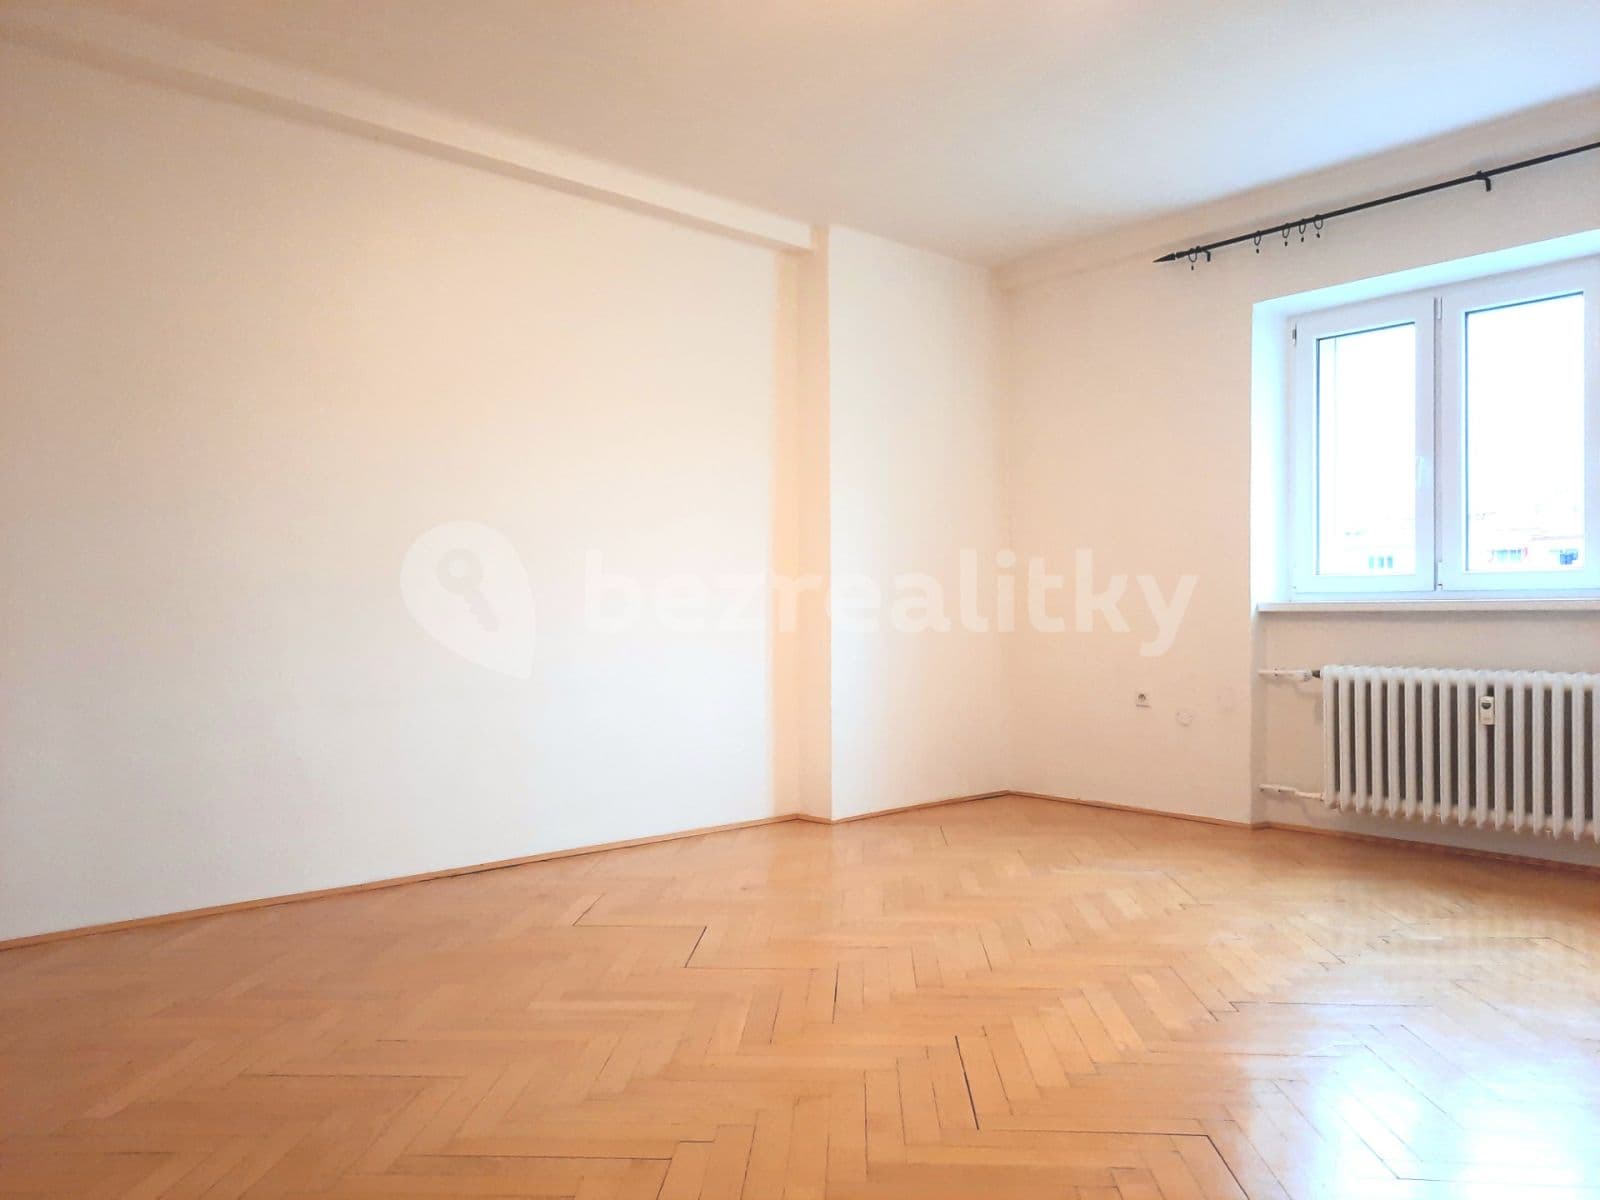 2 bedroom flat for sale, 66 m², Sokolovská, Prague, Prague